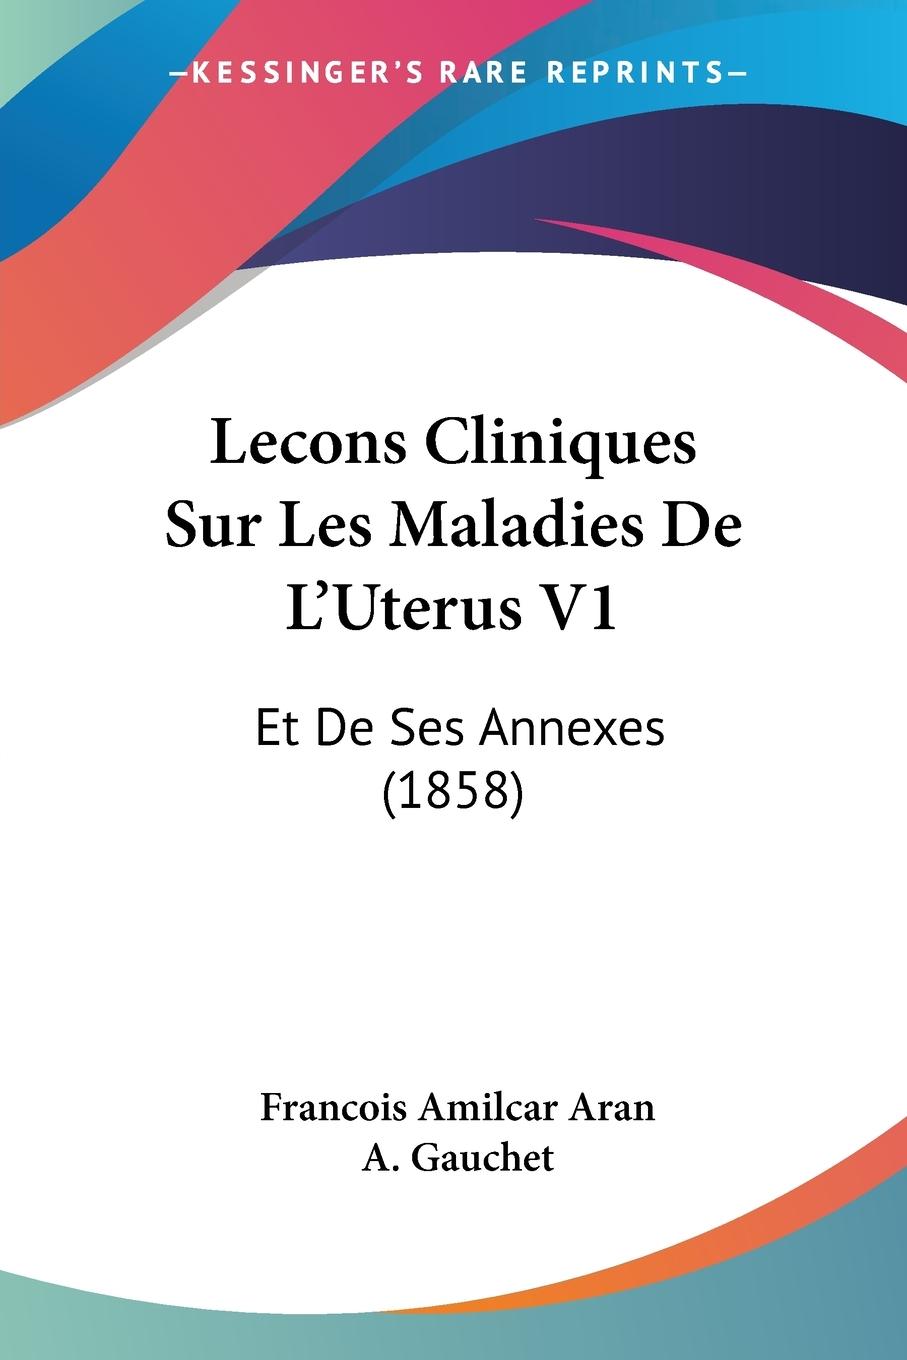 Lecons Cliniques Sur Les Maladies De L Uterus V1 - Aran, Francois Amilcar Gauchet, A.